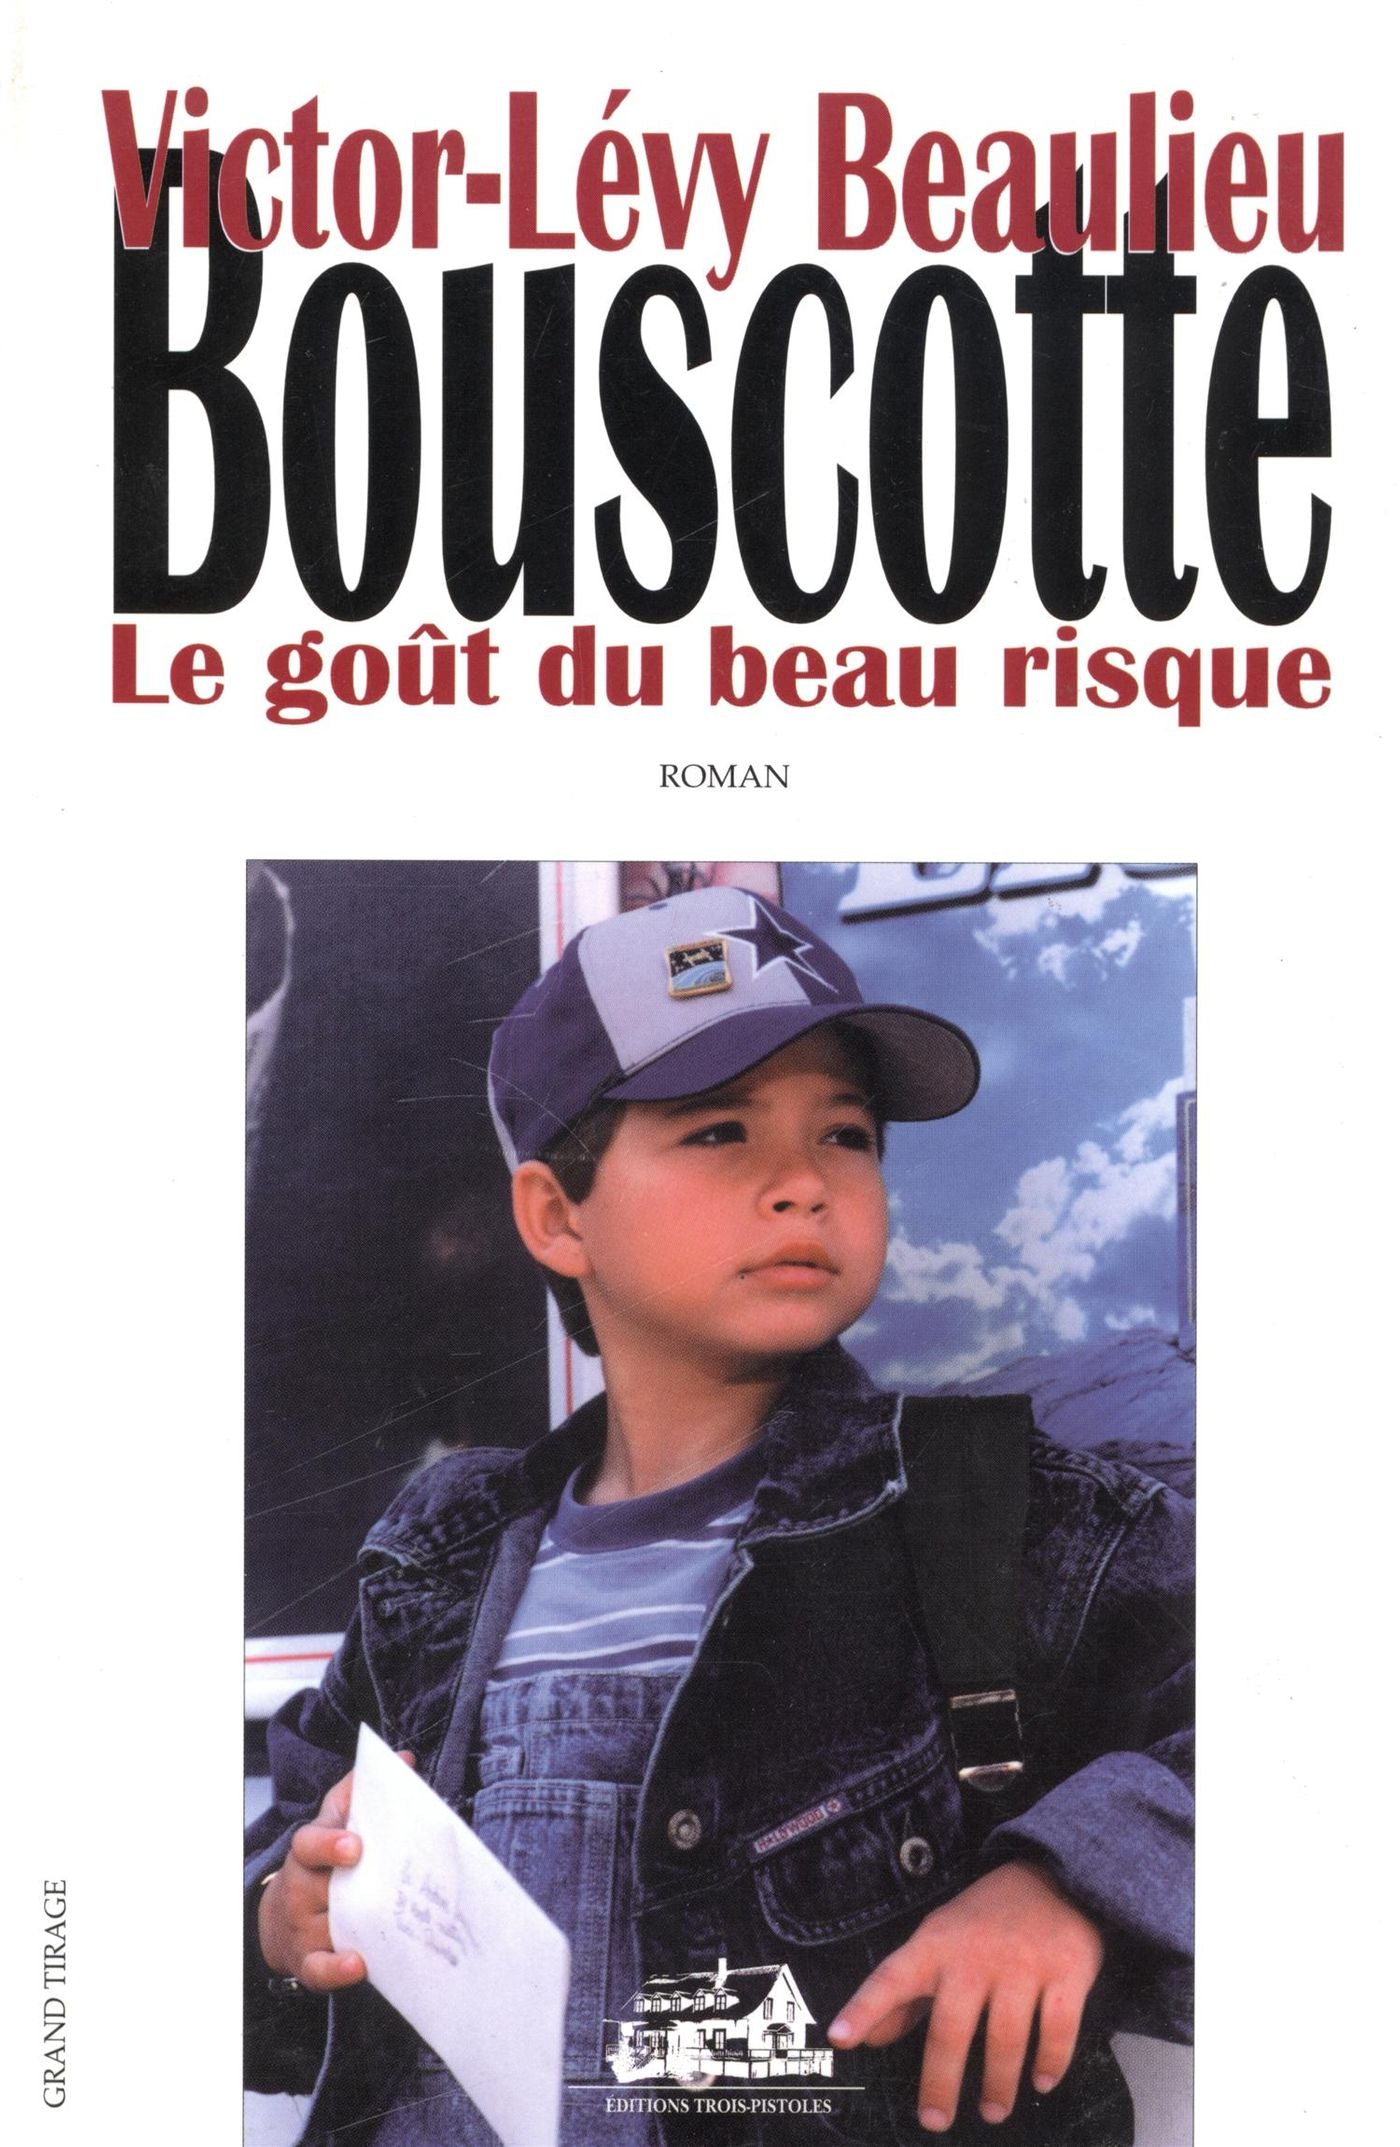 Bouscotte # 1 : Le goût du beau risque - Victor-Lévy Beaulieu